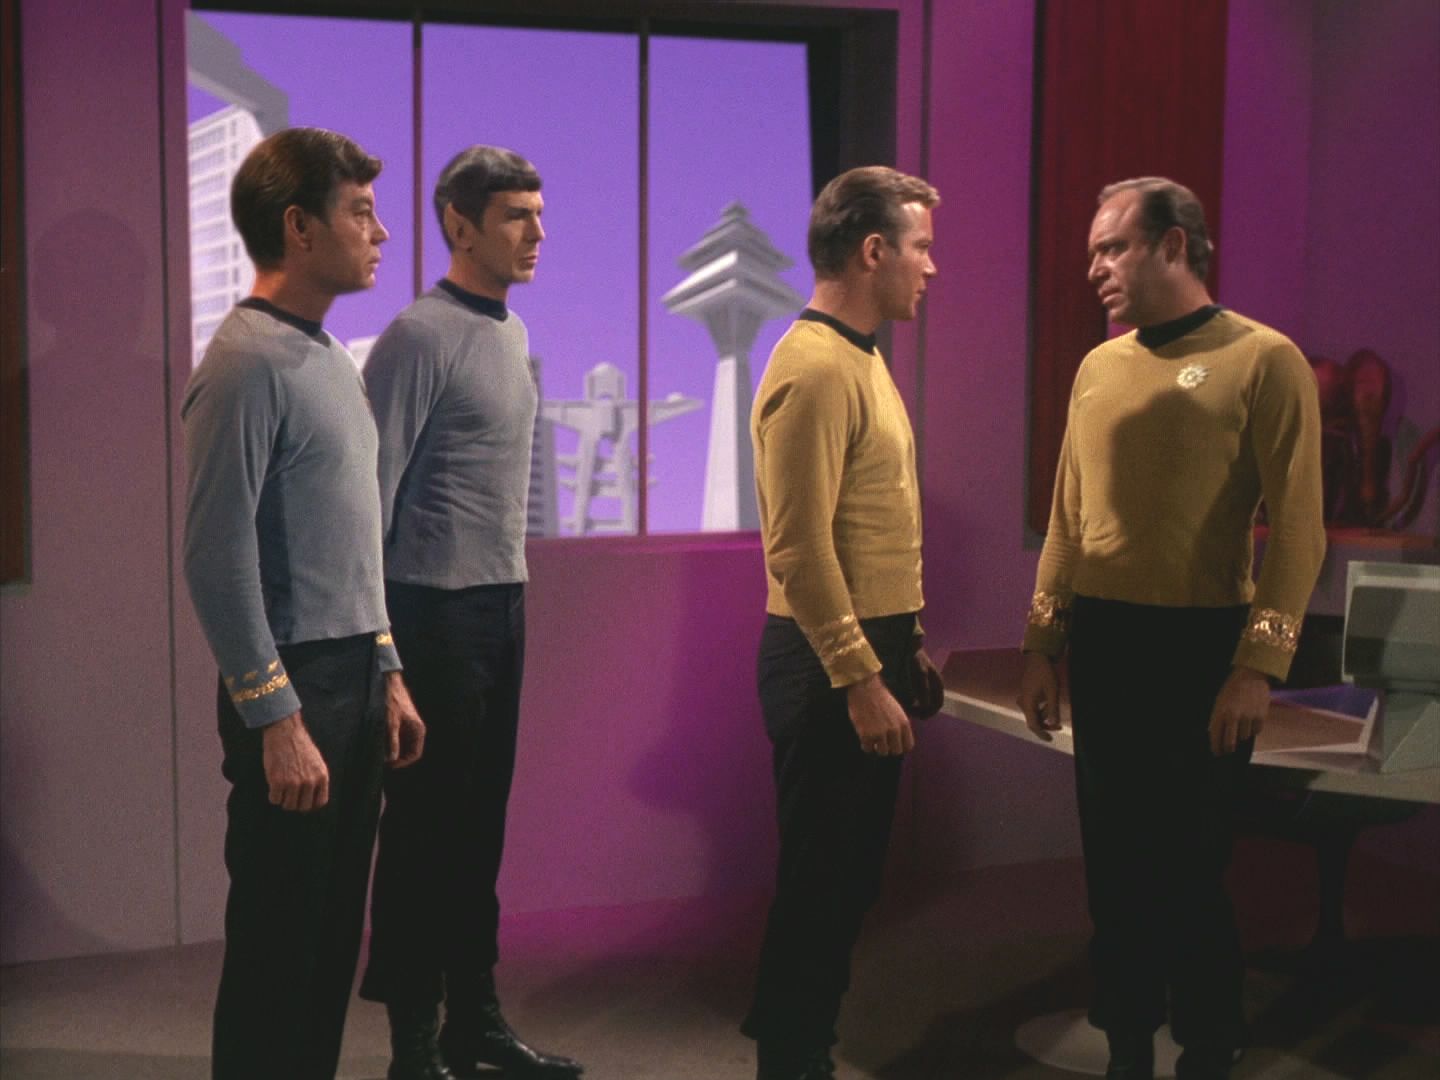 Na hvězdnou základnu 11 přiletěla Enterprise, protože Spock přijal zprávu, že se má co nejrychleji dostavit. Komodor Mendez i kapitán Kirk jsou zmateni, o zprávě není záznam.